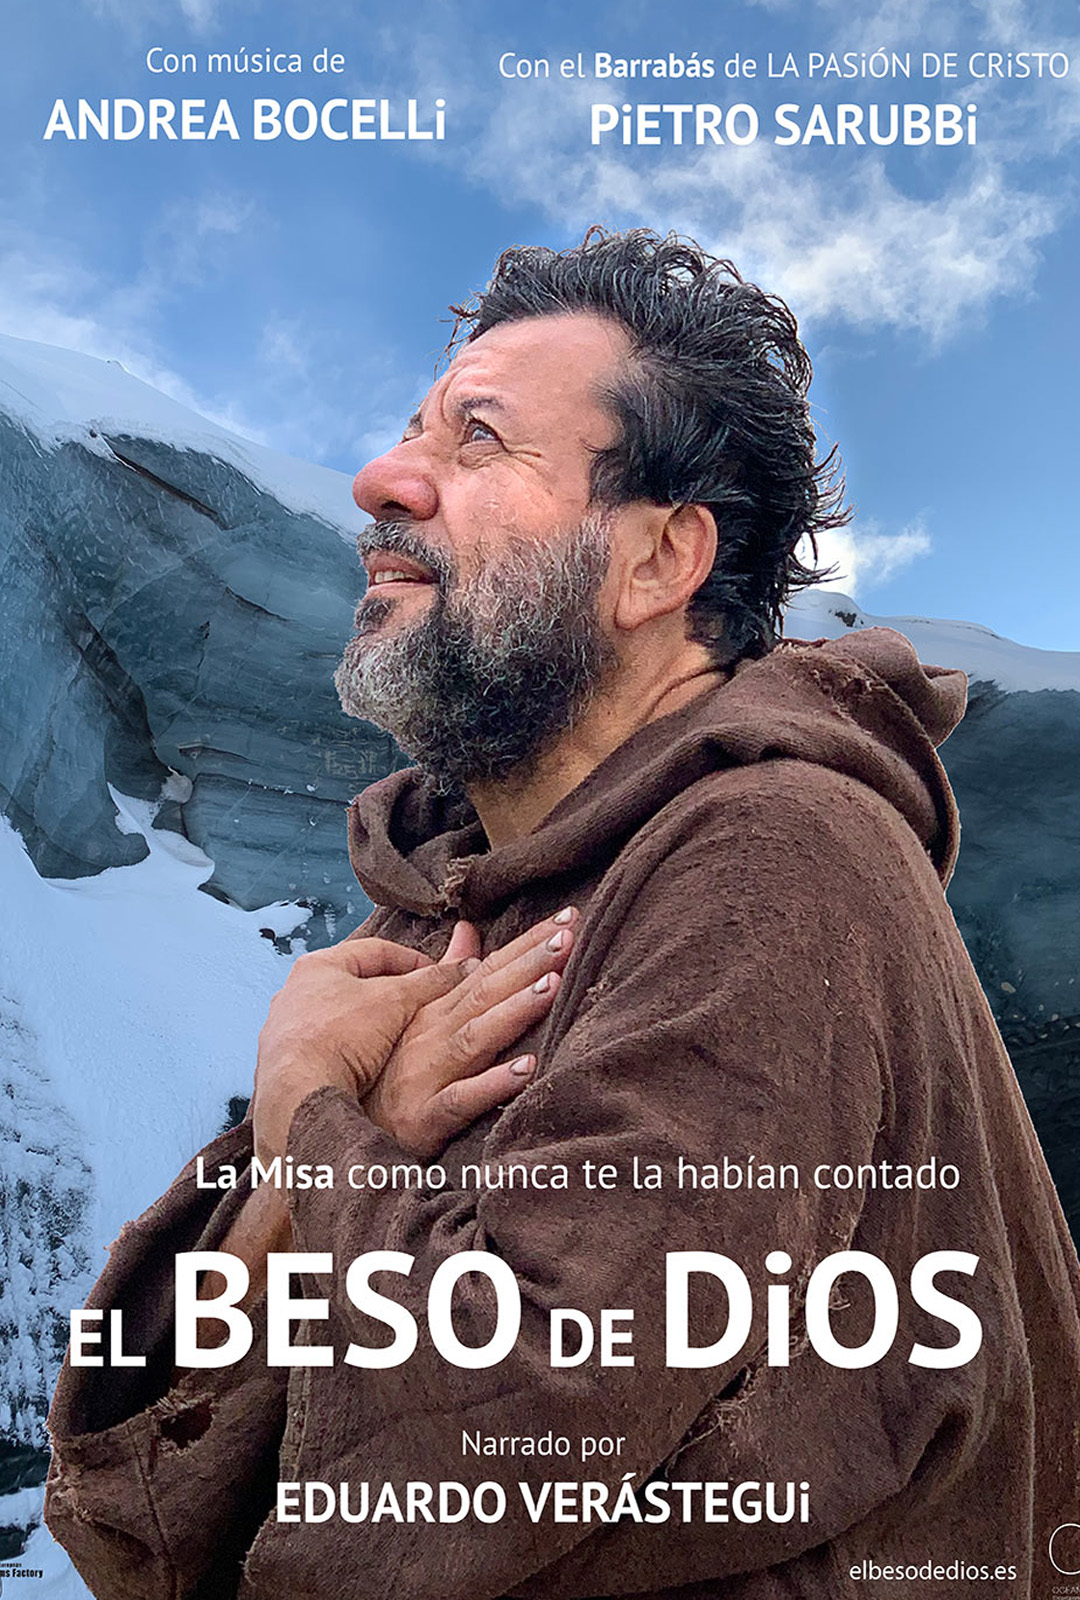 Movie Poster: El Beso de Dios